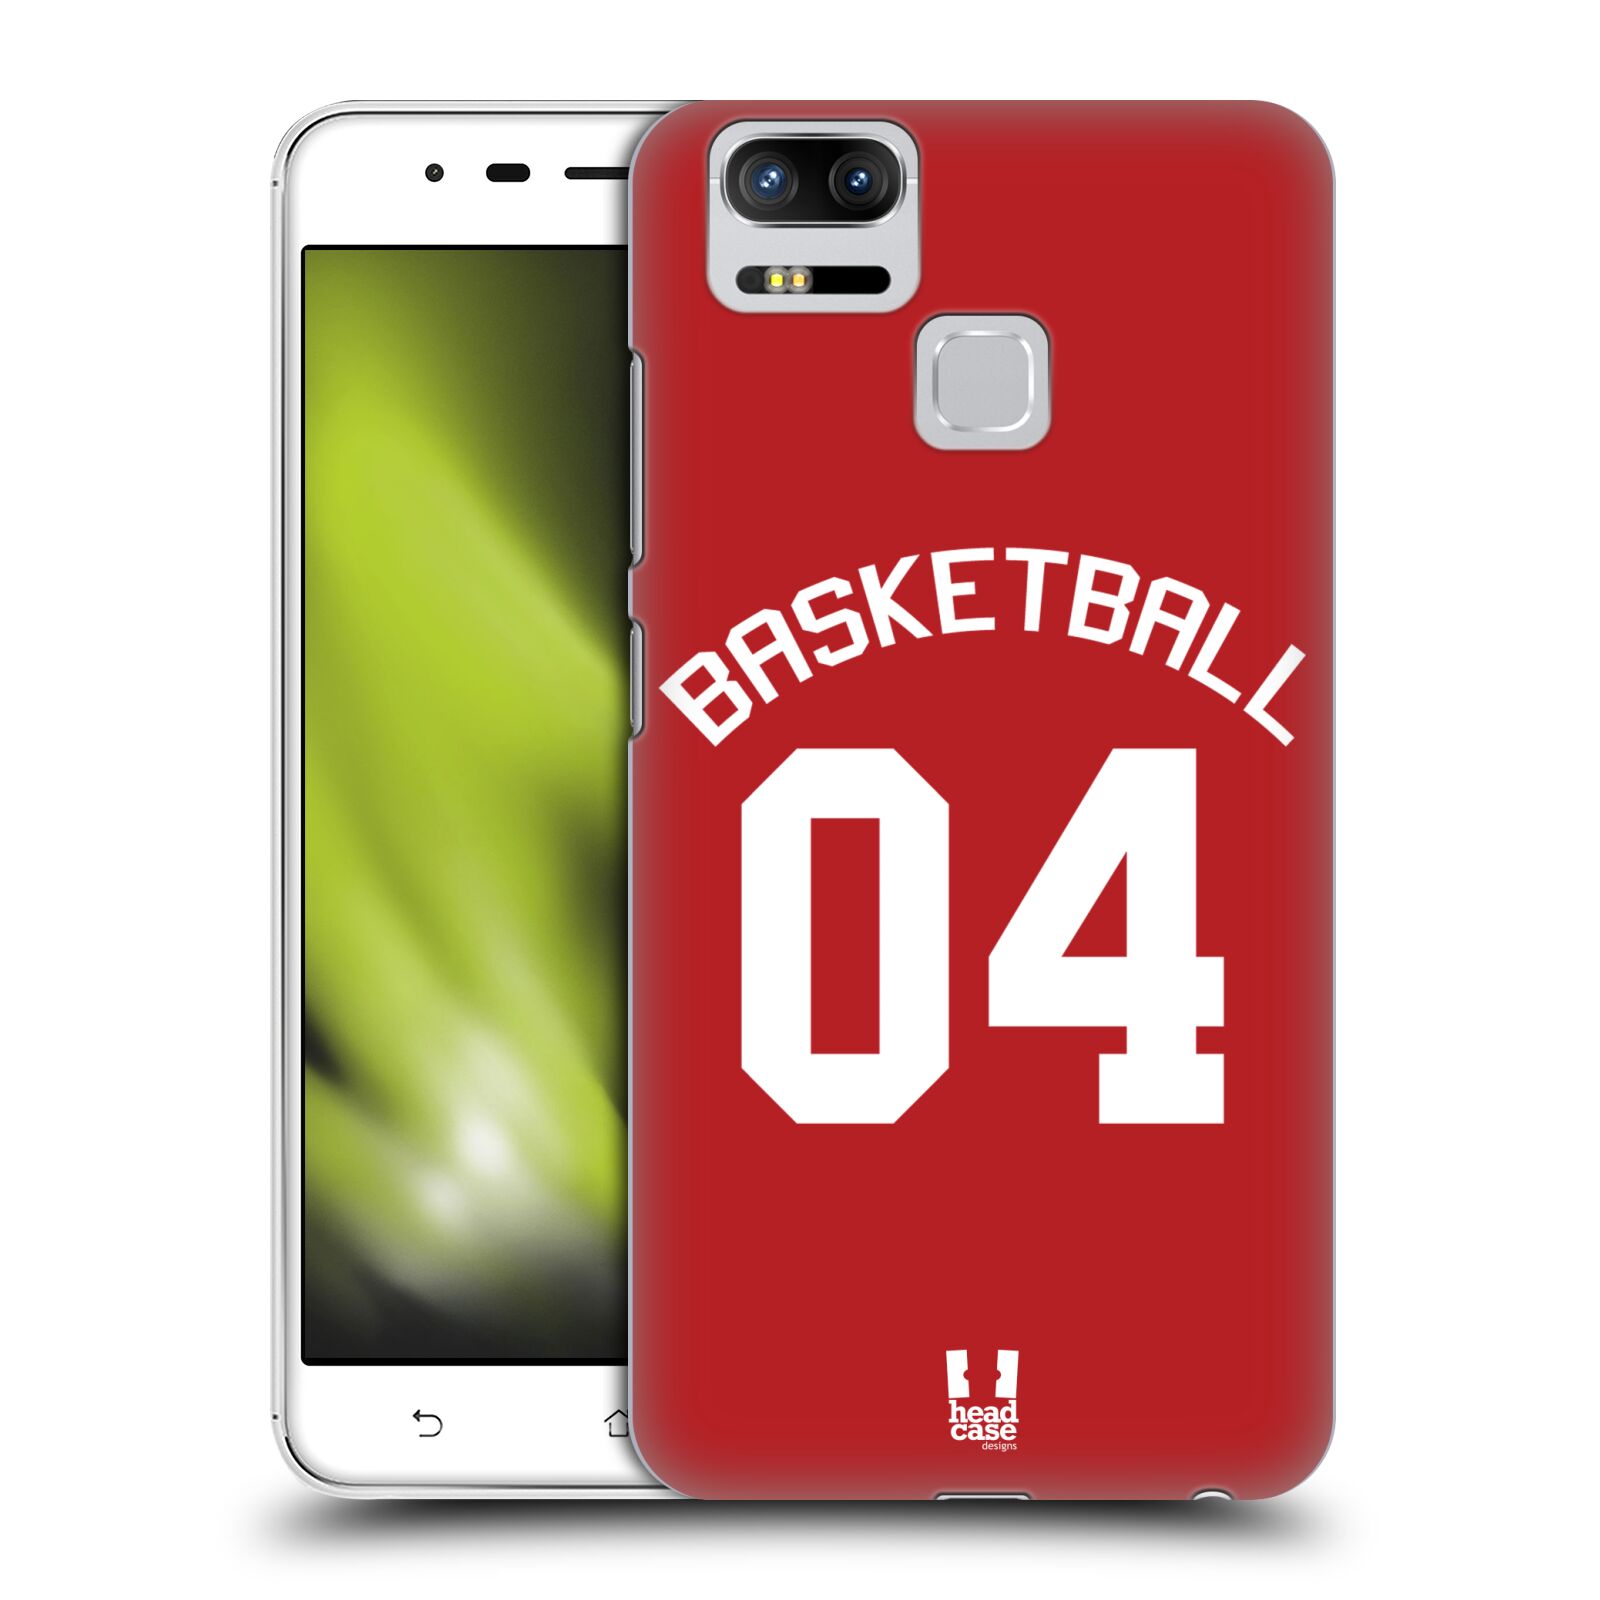 HEAD CASE plastový obal na mobil Asus Zenfone 3 Zoom ZE553KL Sportovní dres Basketbal červený